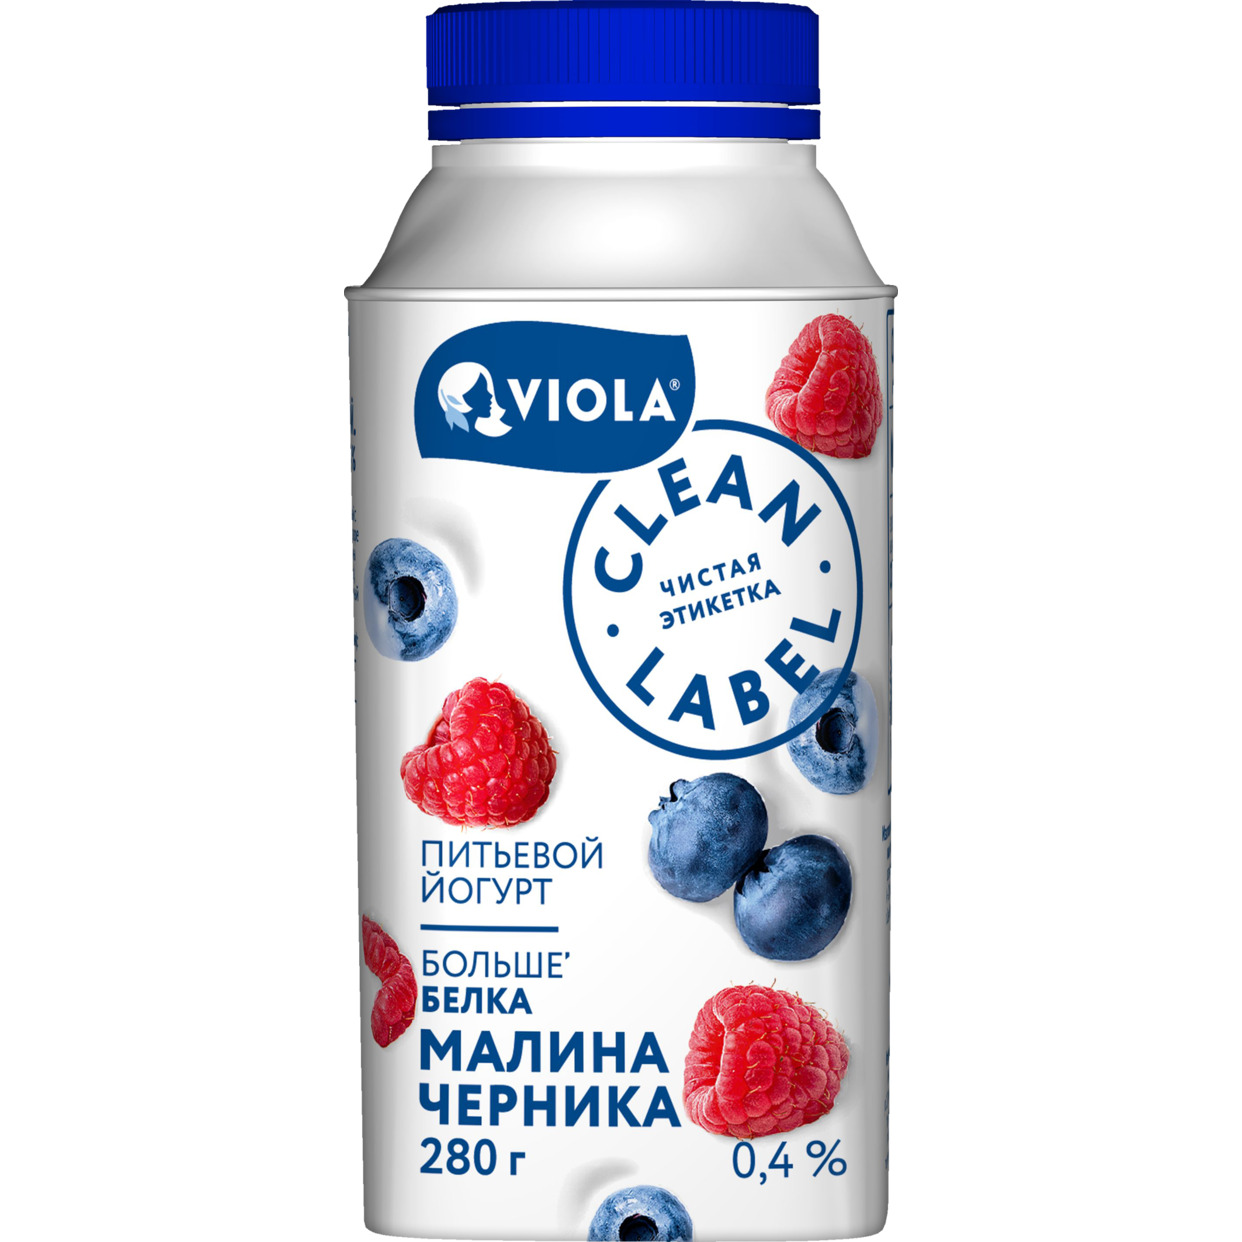 БЗМЖ Йогурт VIOLA Clean Label с малиной/черникой питьевой 0,4% 280г по акции в Пятерочке